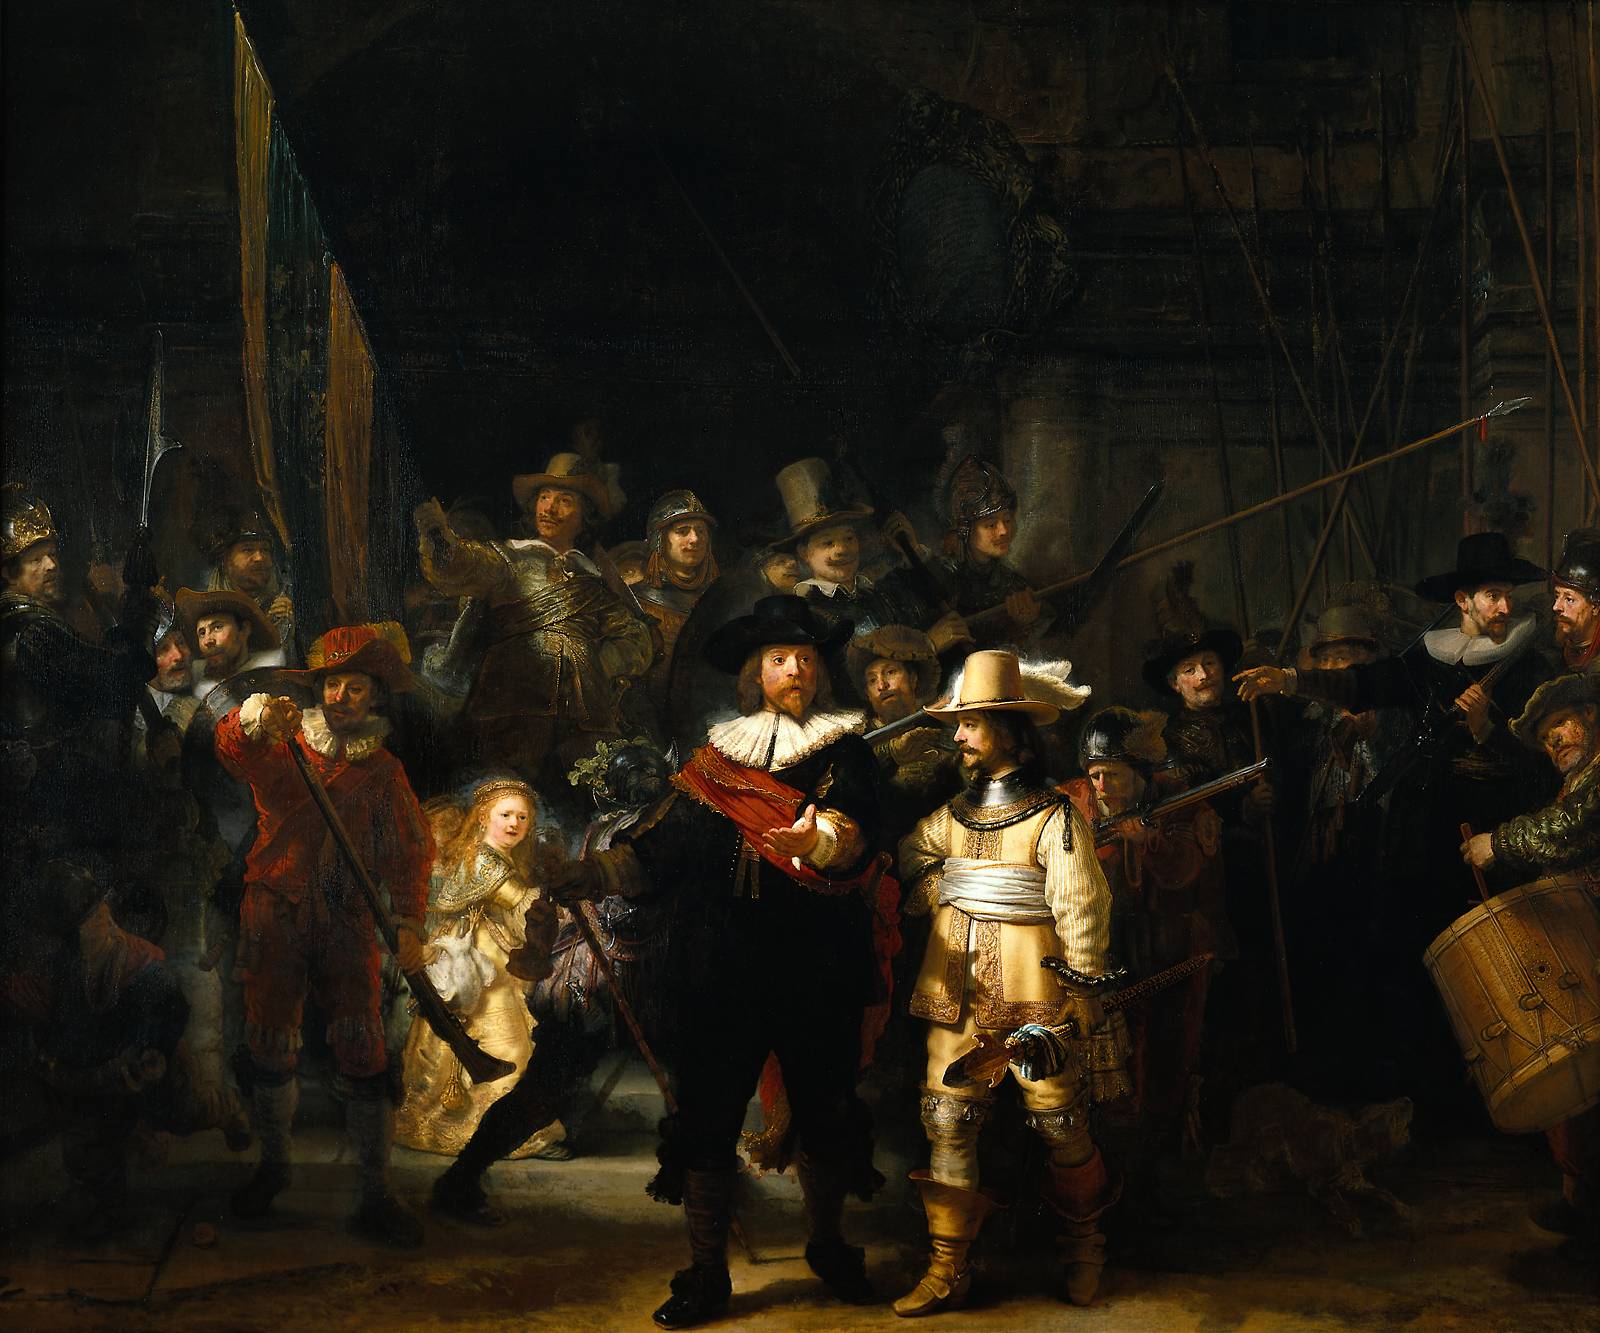 The Night Watch by Rembrandt van Rijn - 1642 - 363 cm × 437 cm Rijksmuseum